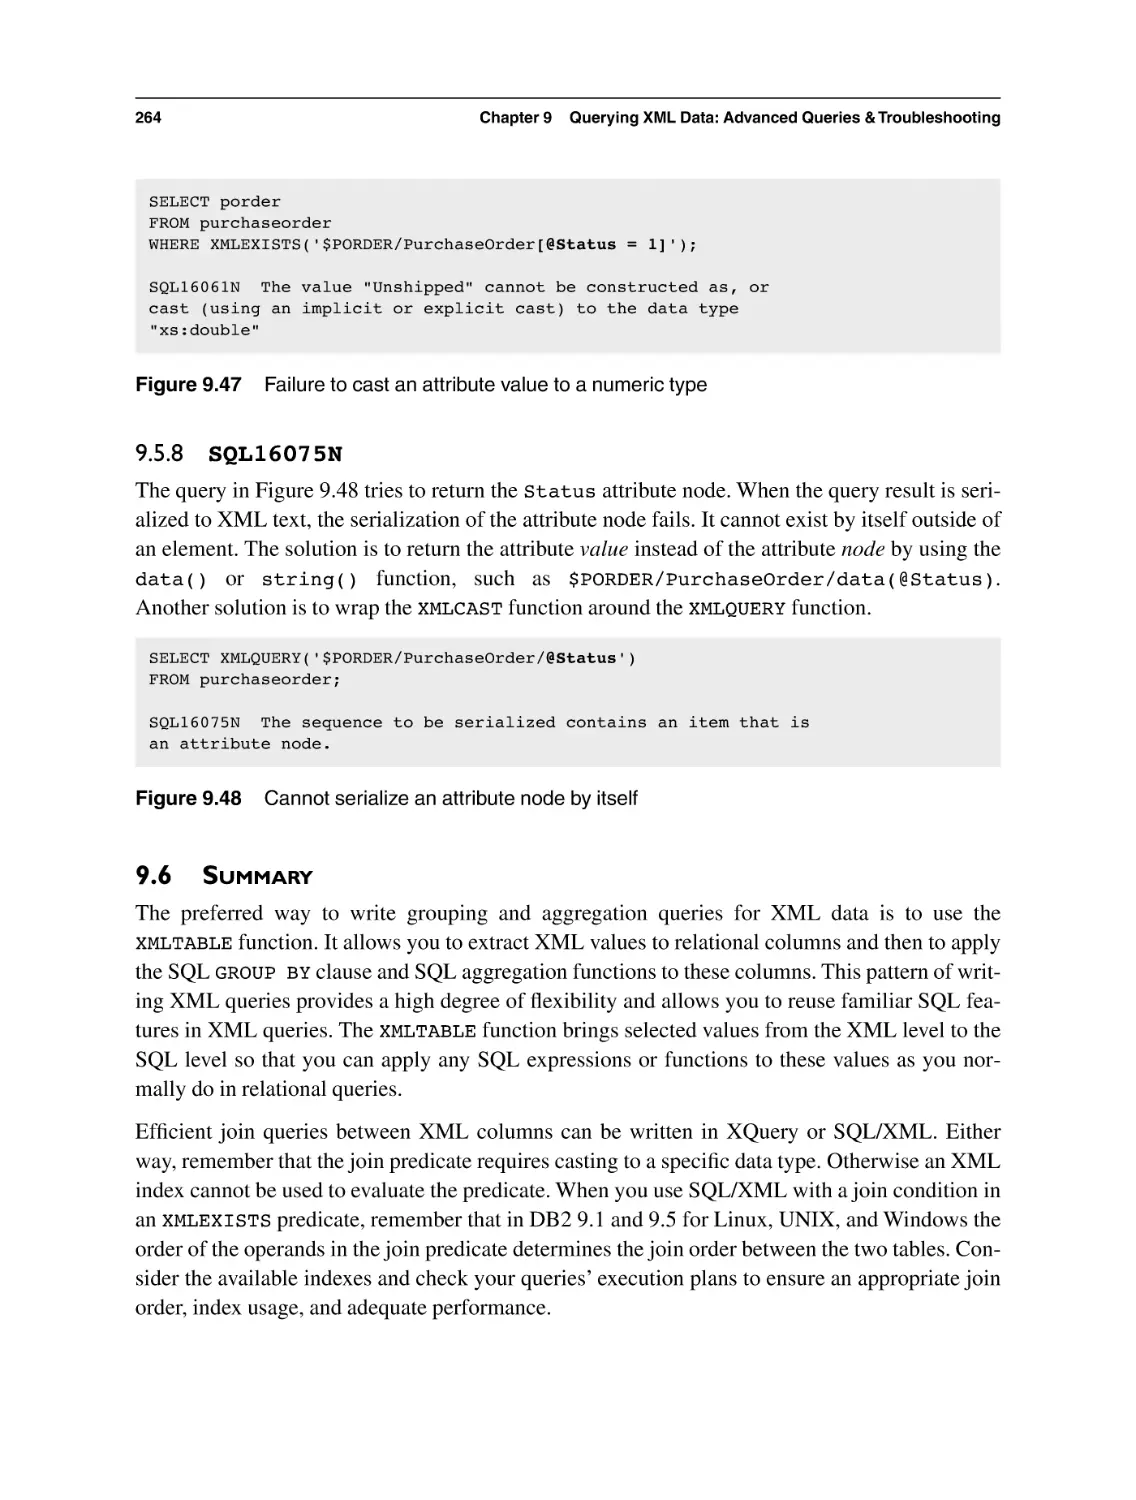 9.5.8 SQL16075N
9.6 Summary